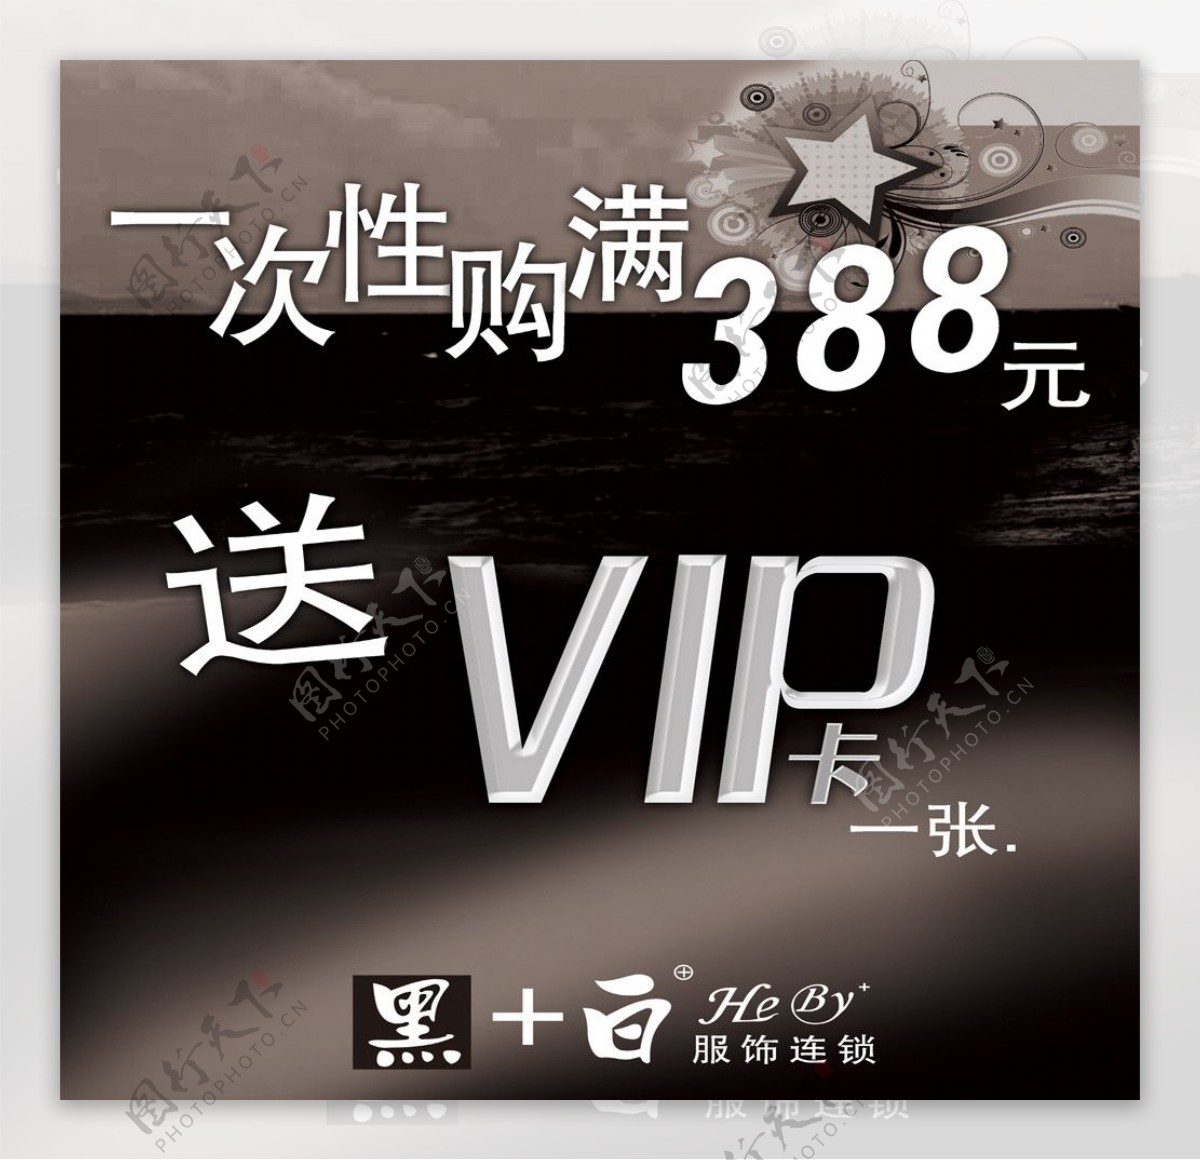 黑白VIP海报图片